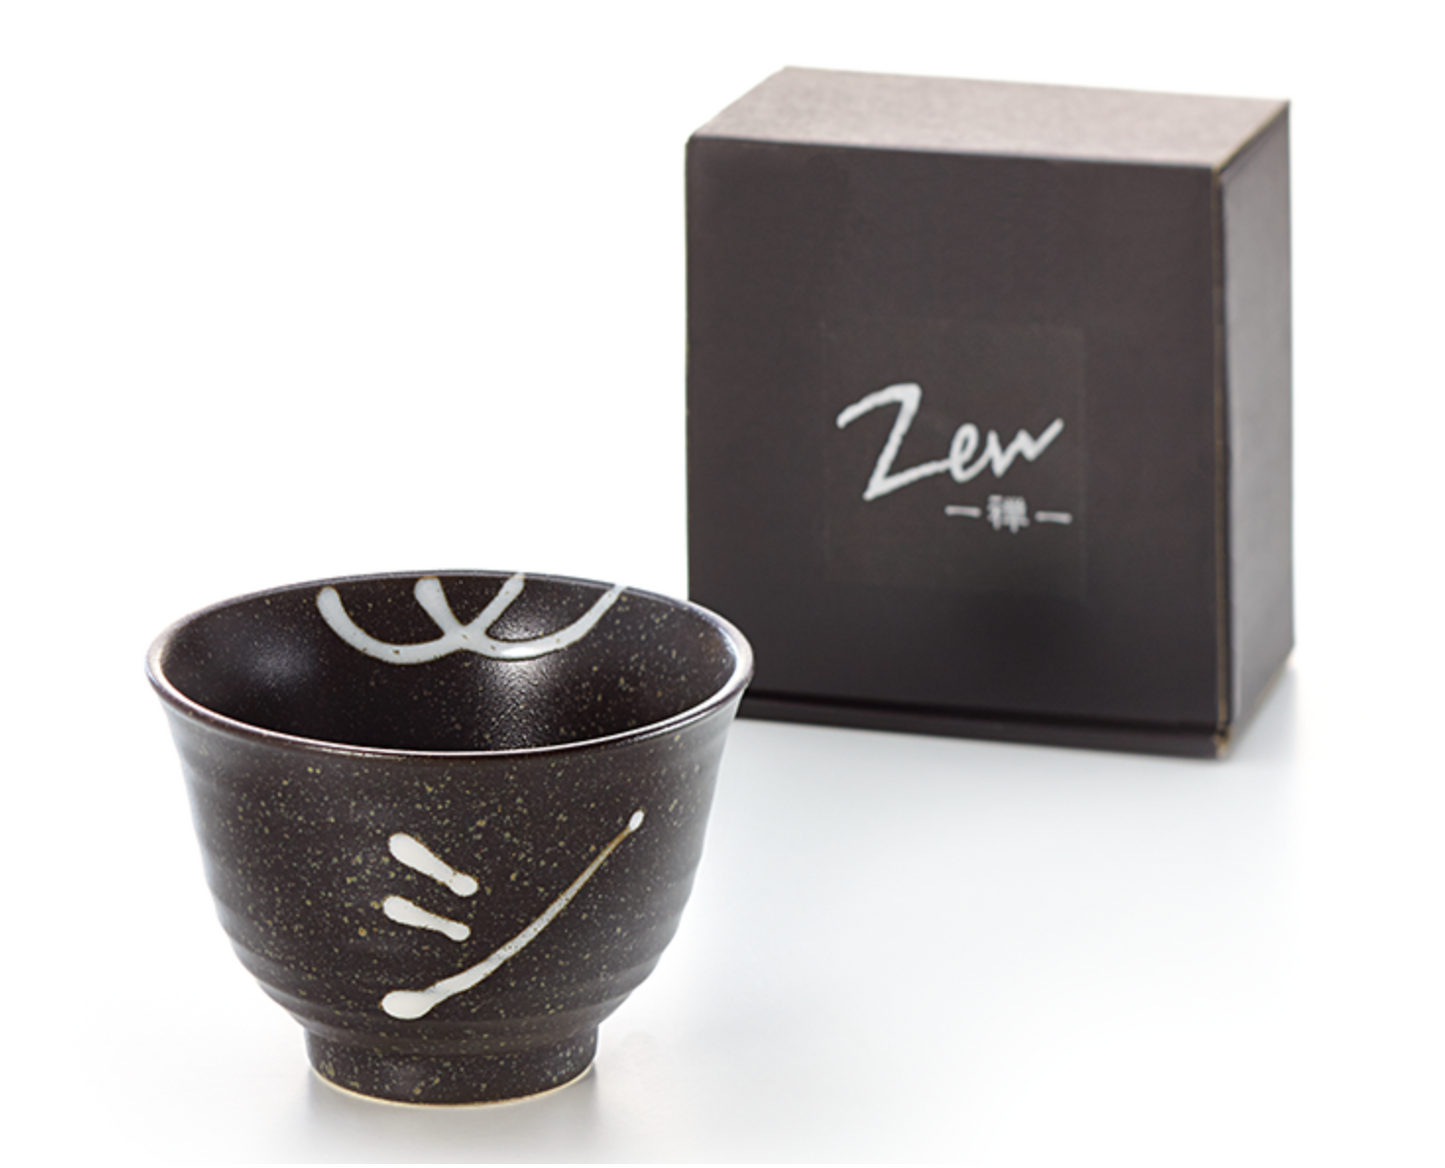 Matcha-Bowl "Kimi", ceramics, 8.5 fl.oz. (0.25 l)